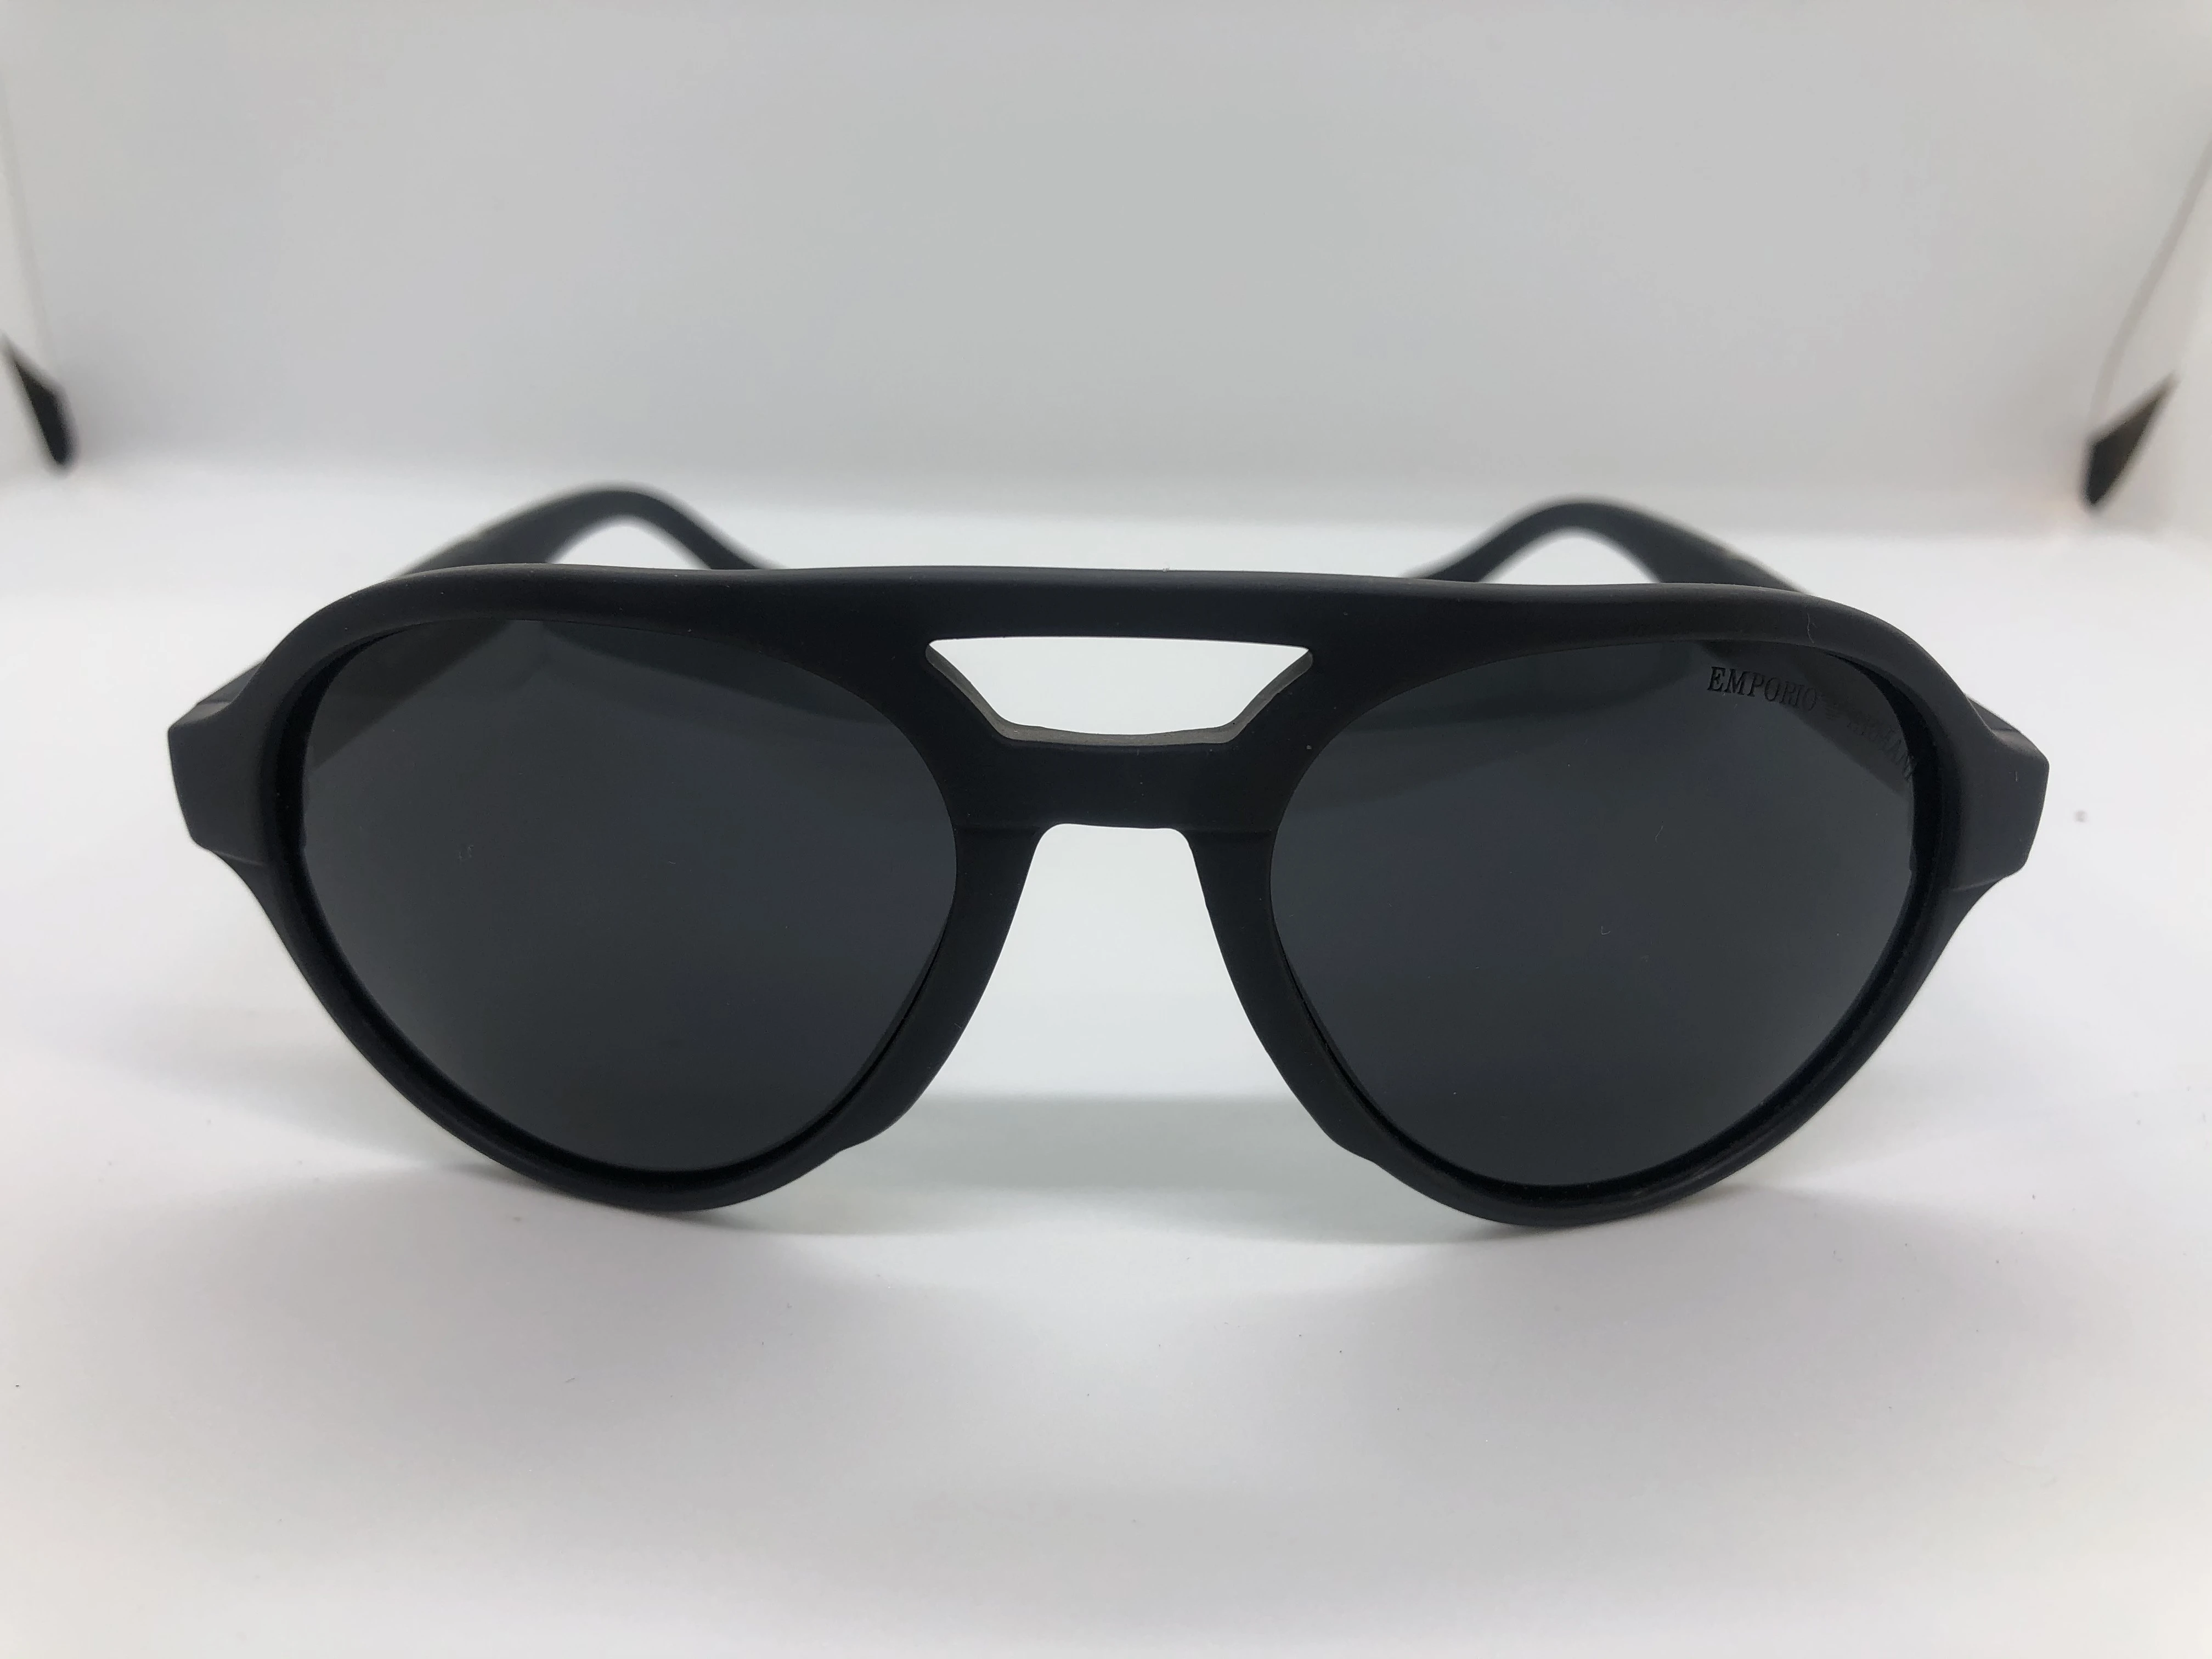 نظارة شمسية بيضاوية -سوداء من امبوريو ارماني - بإطاراسود بولي كاربونات - وعدسات سوداء - وزراع بولي كاربونات اسود - للرجال